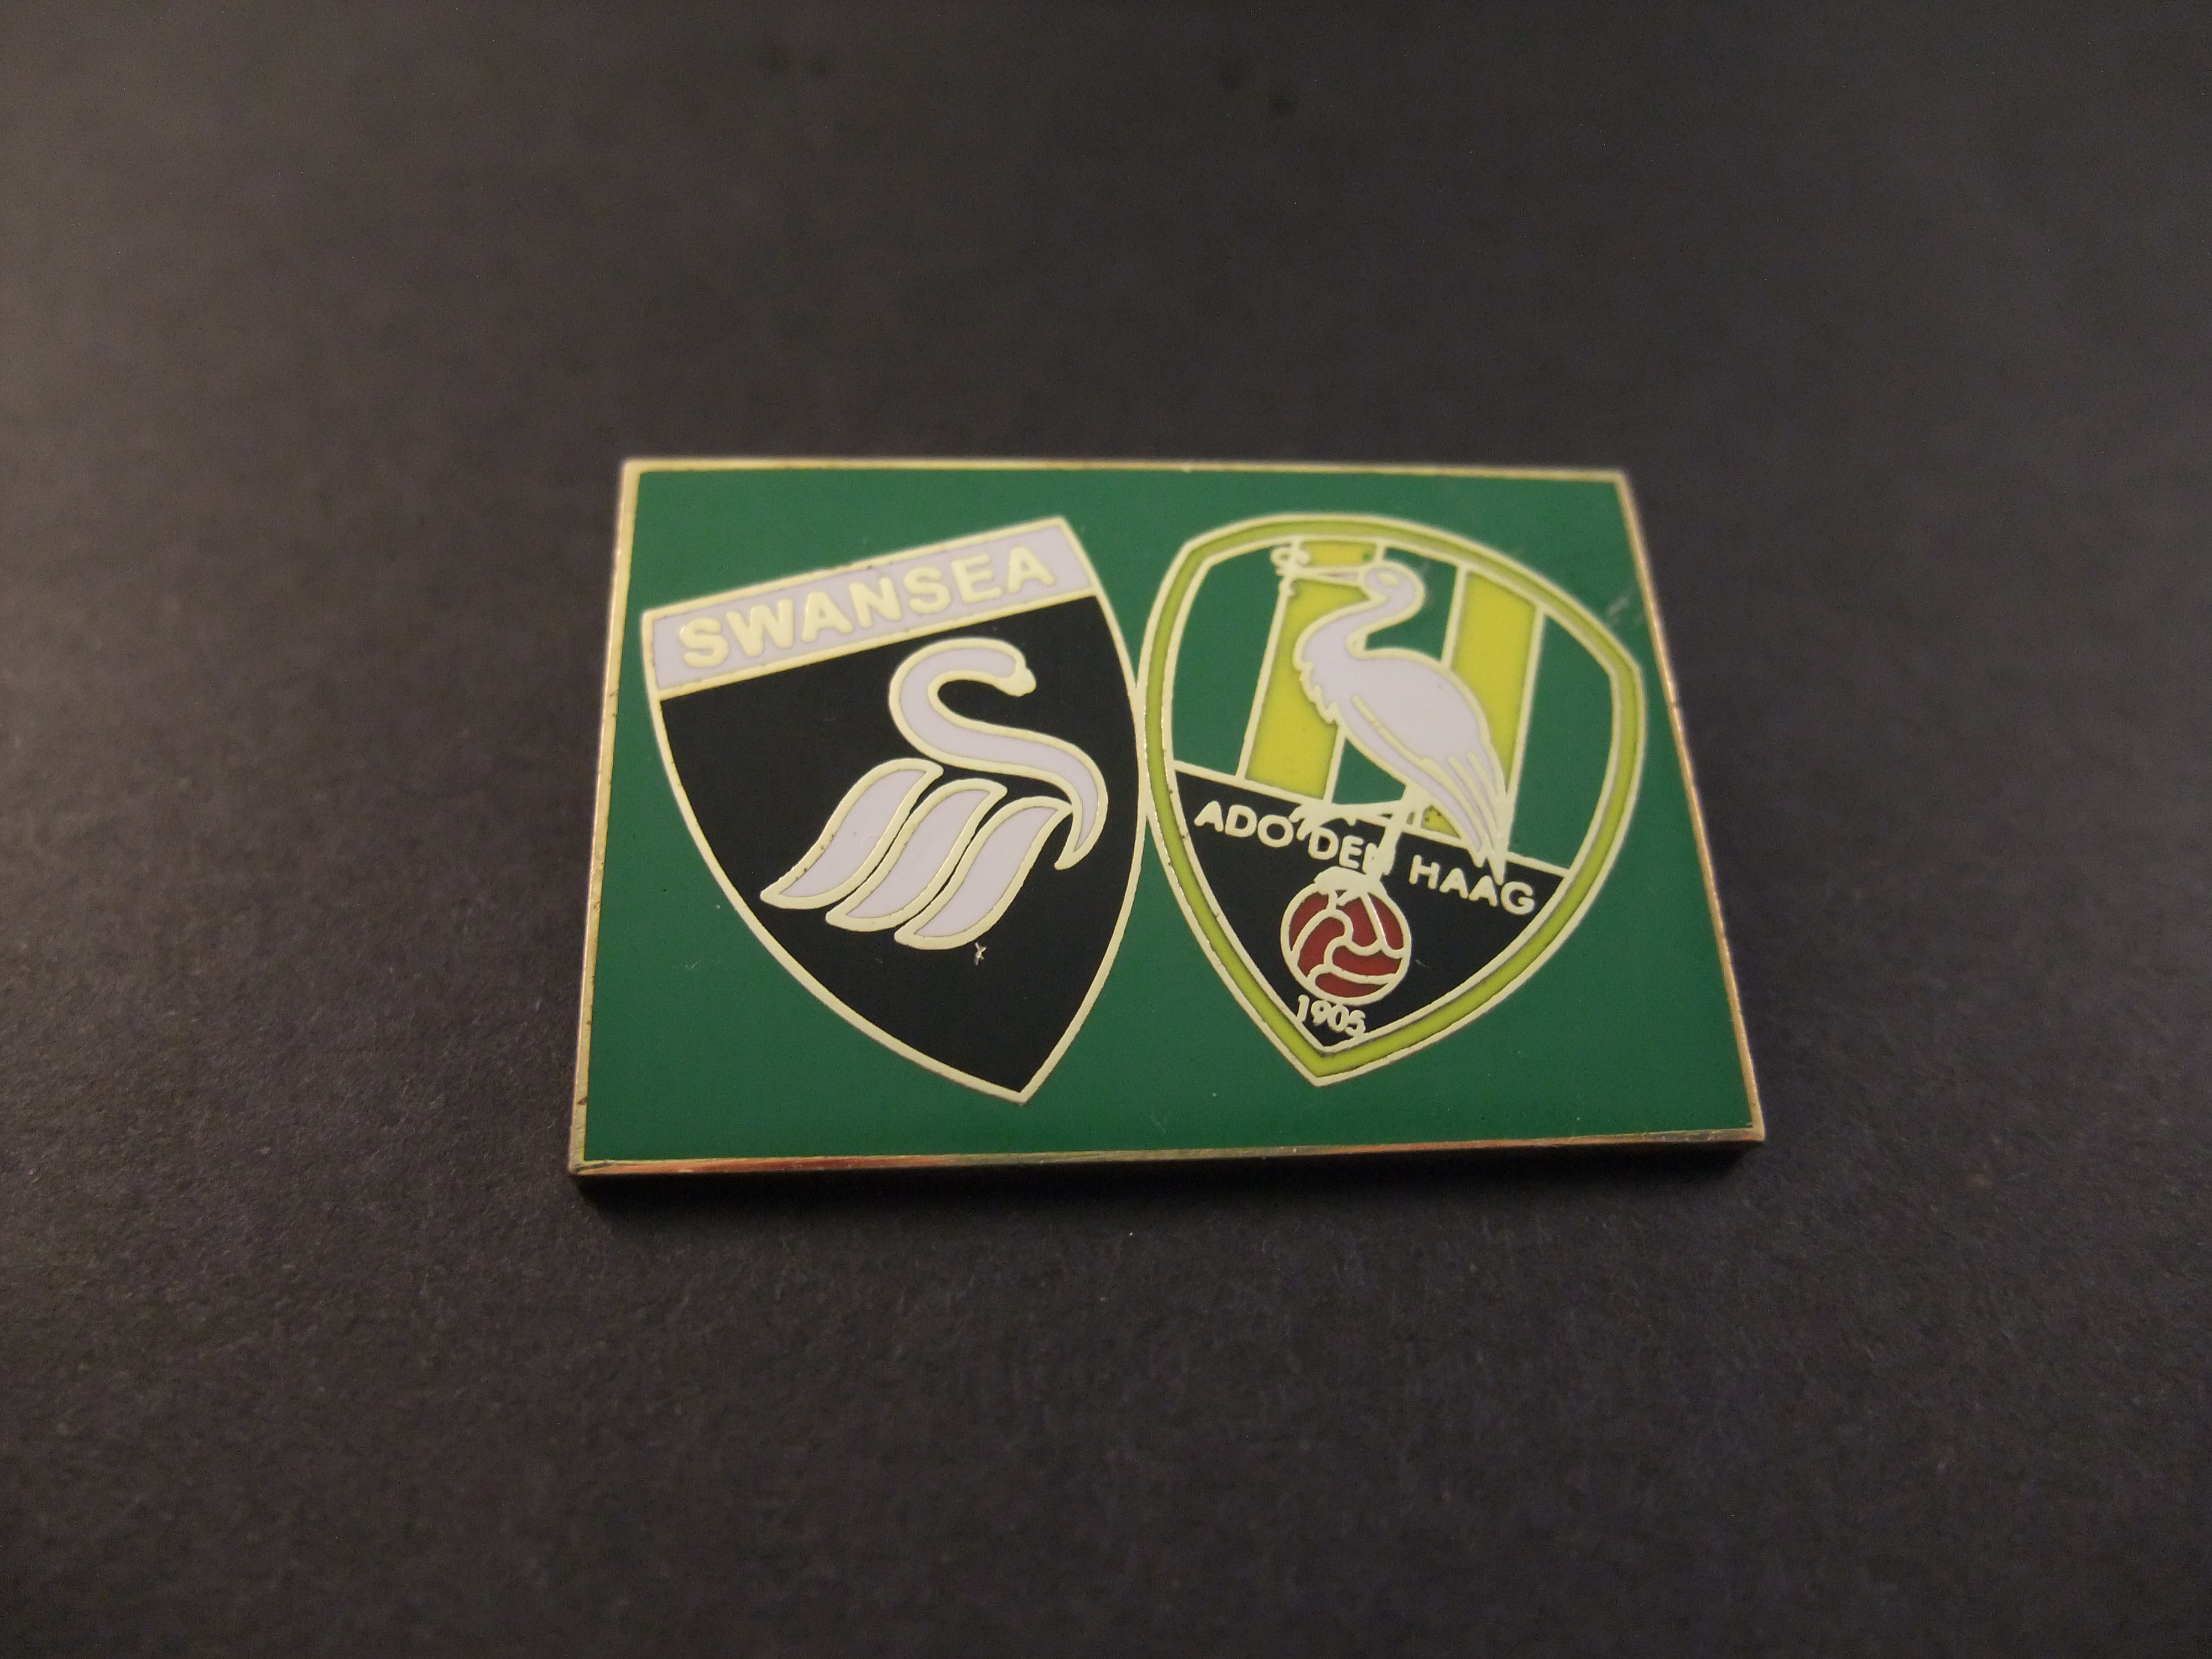 Swansea City- ADO Den Haag logo's samen groen